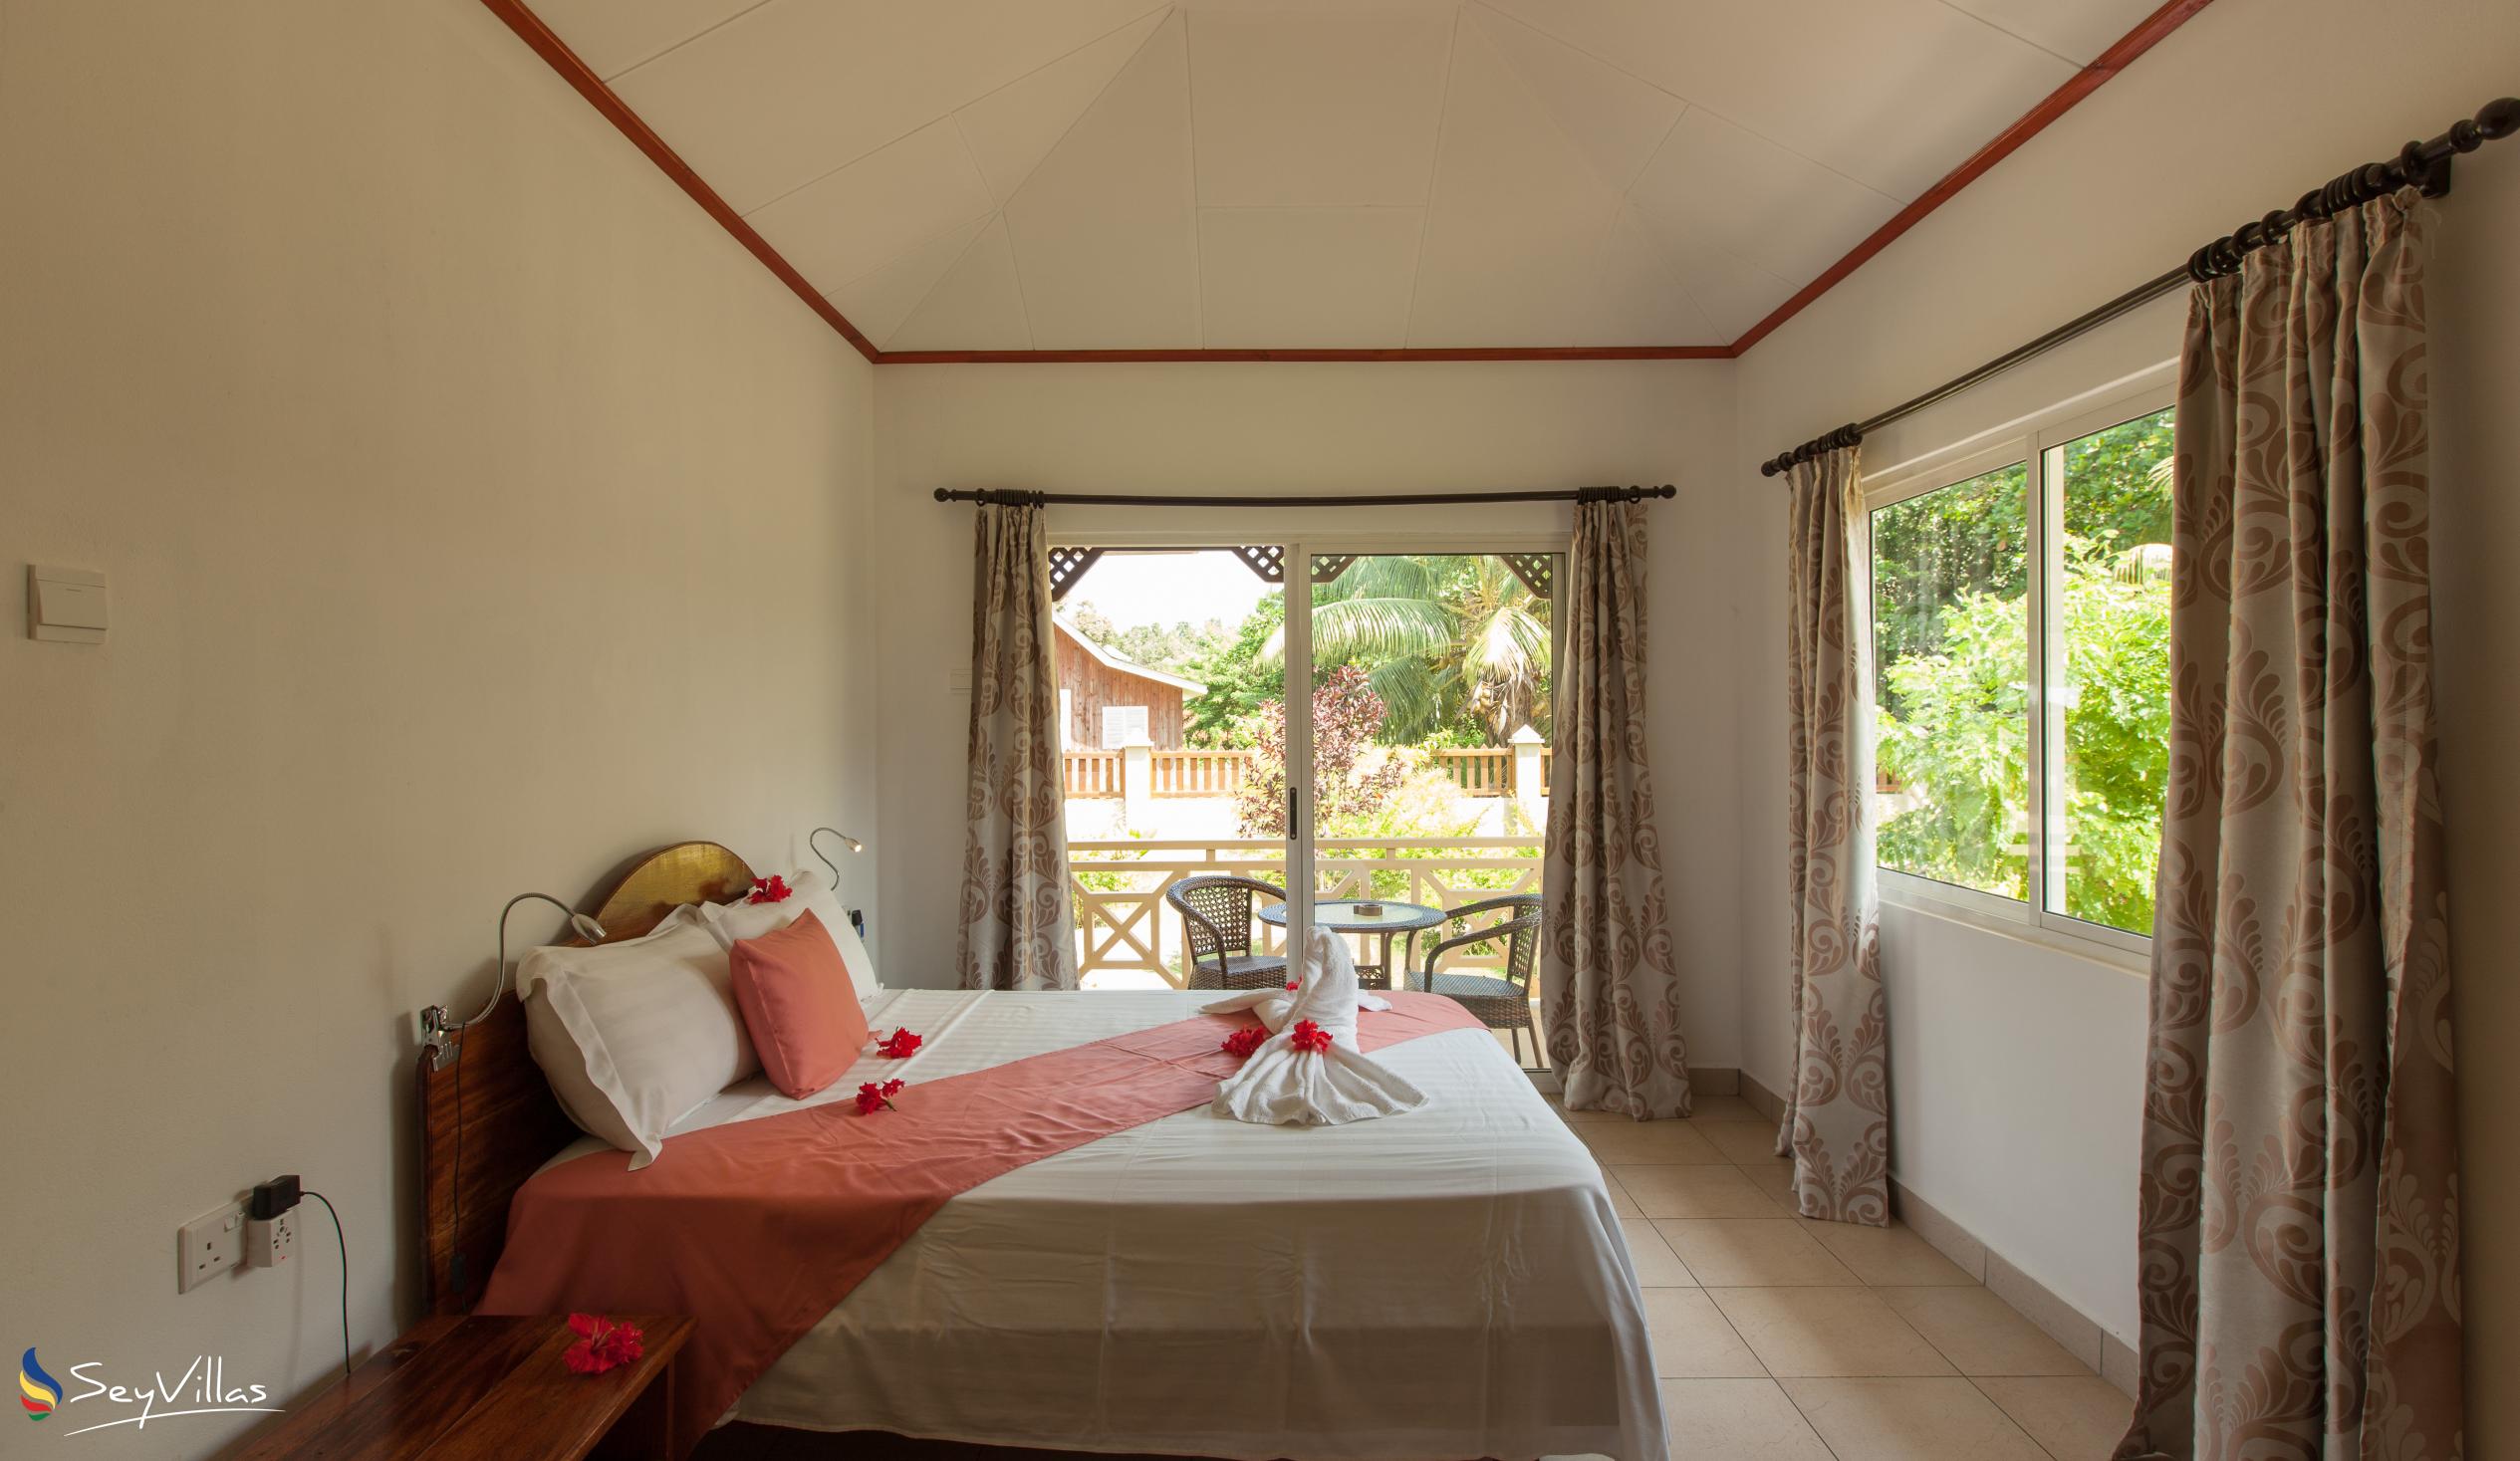 Foto 47: Hostellerie La Digue - Chalet mit 2 Schlafzimmern - La Digue (Seychellen)